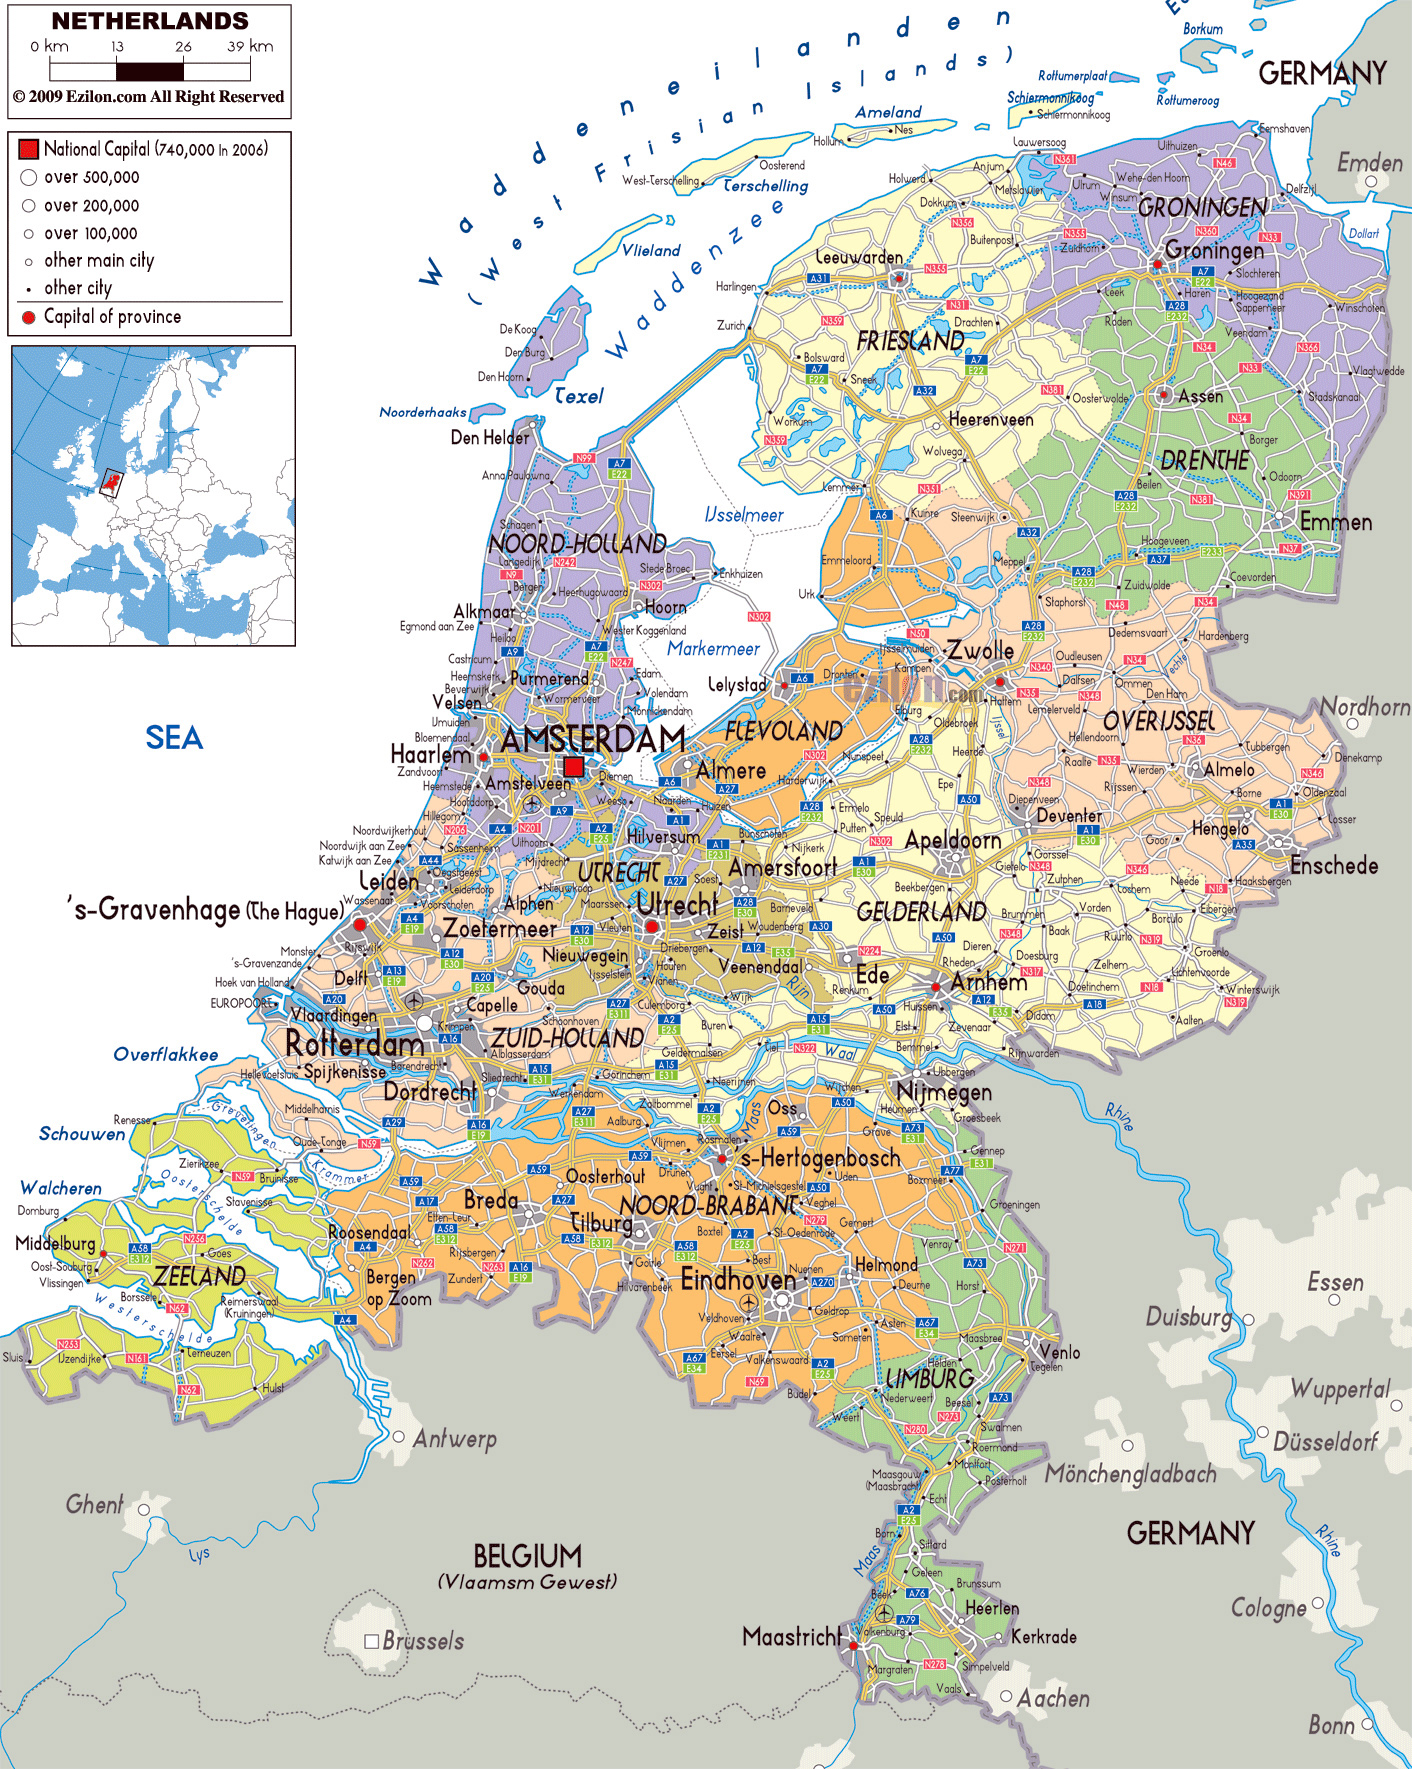 Grande mapa político y administrativo de Holanda con carreteras